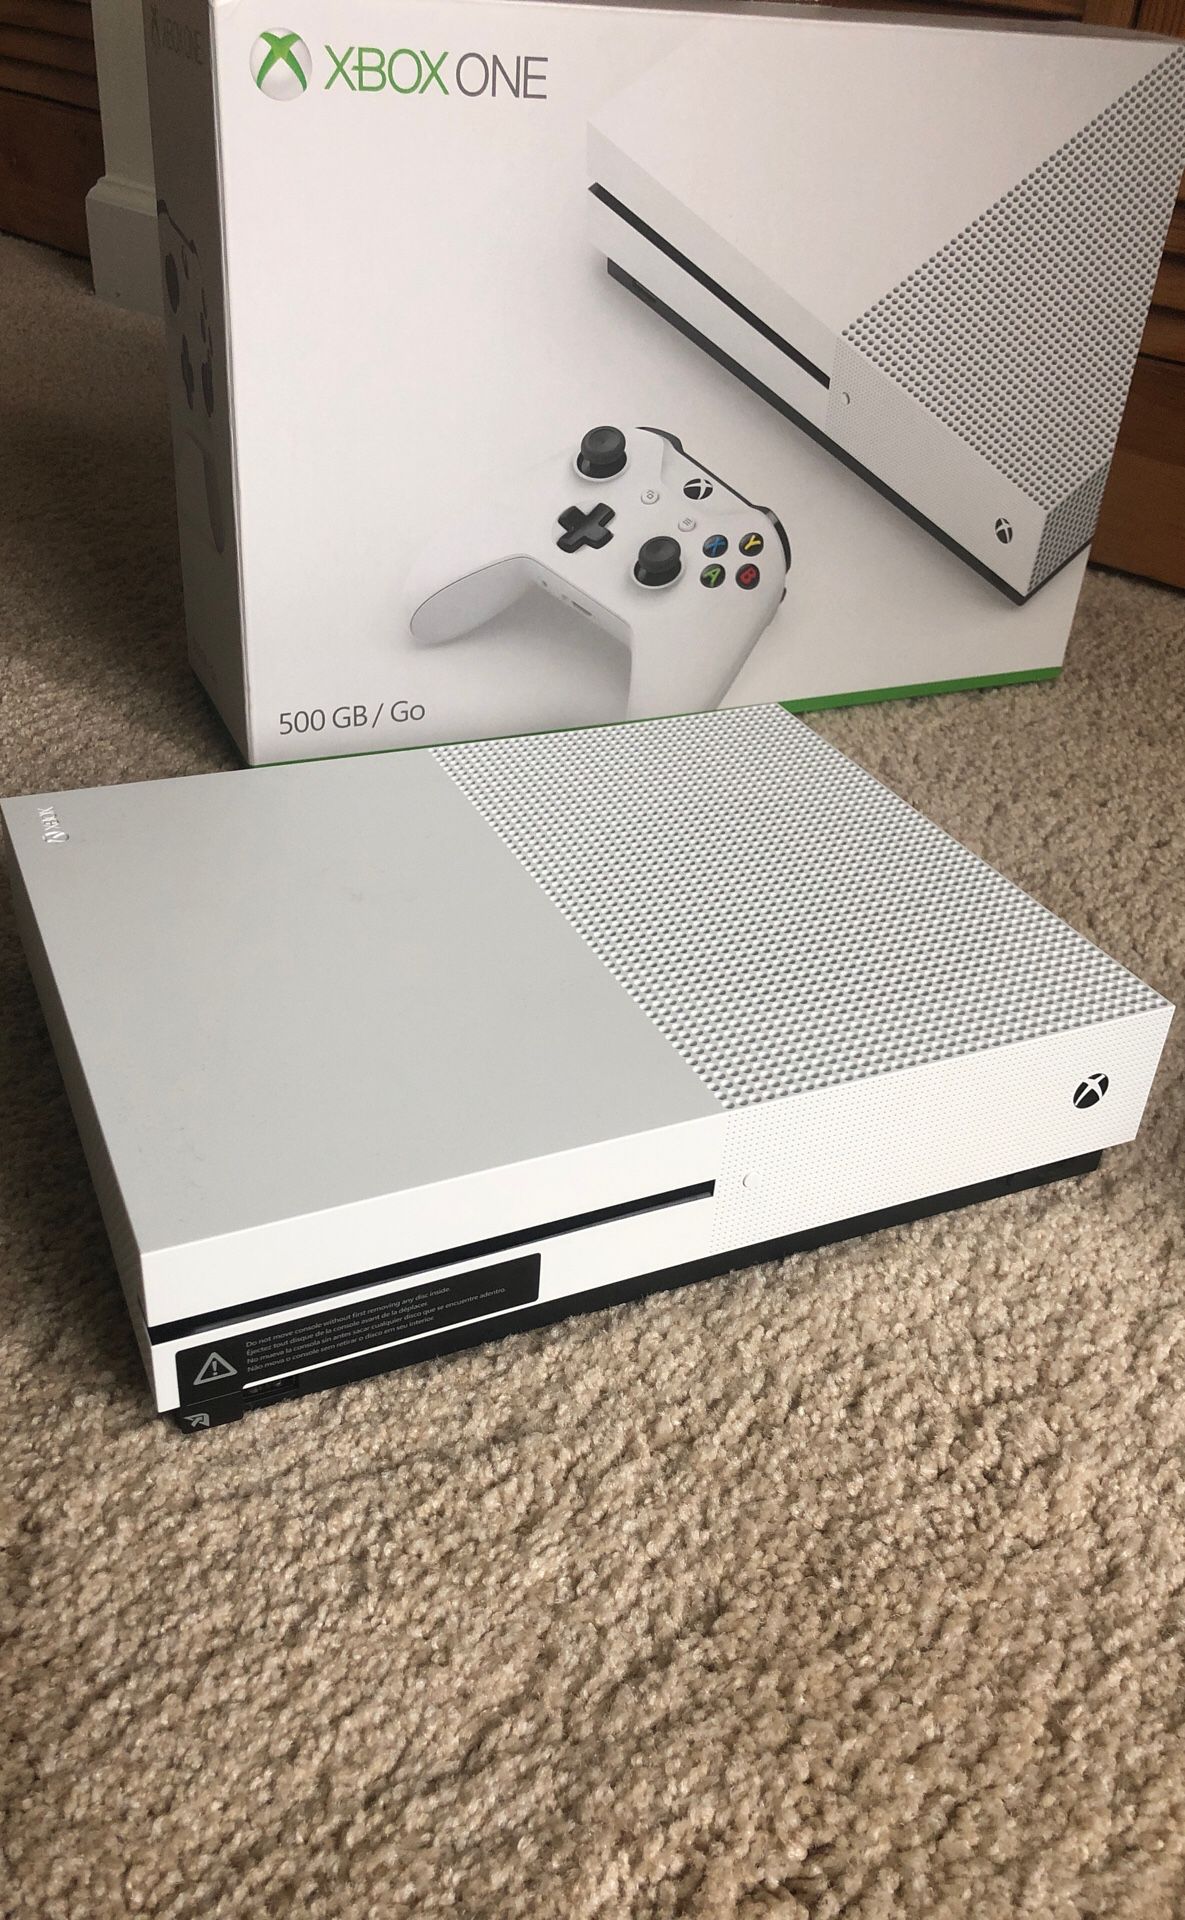 Xbox One S (500 GB)